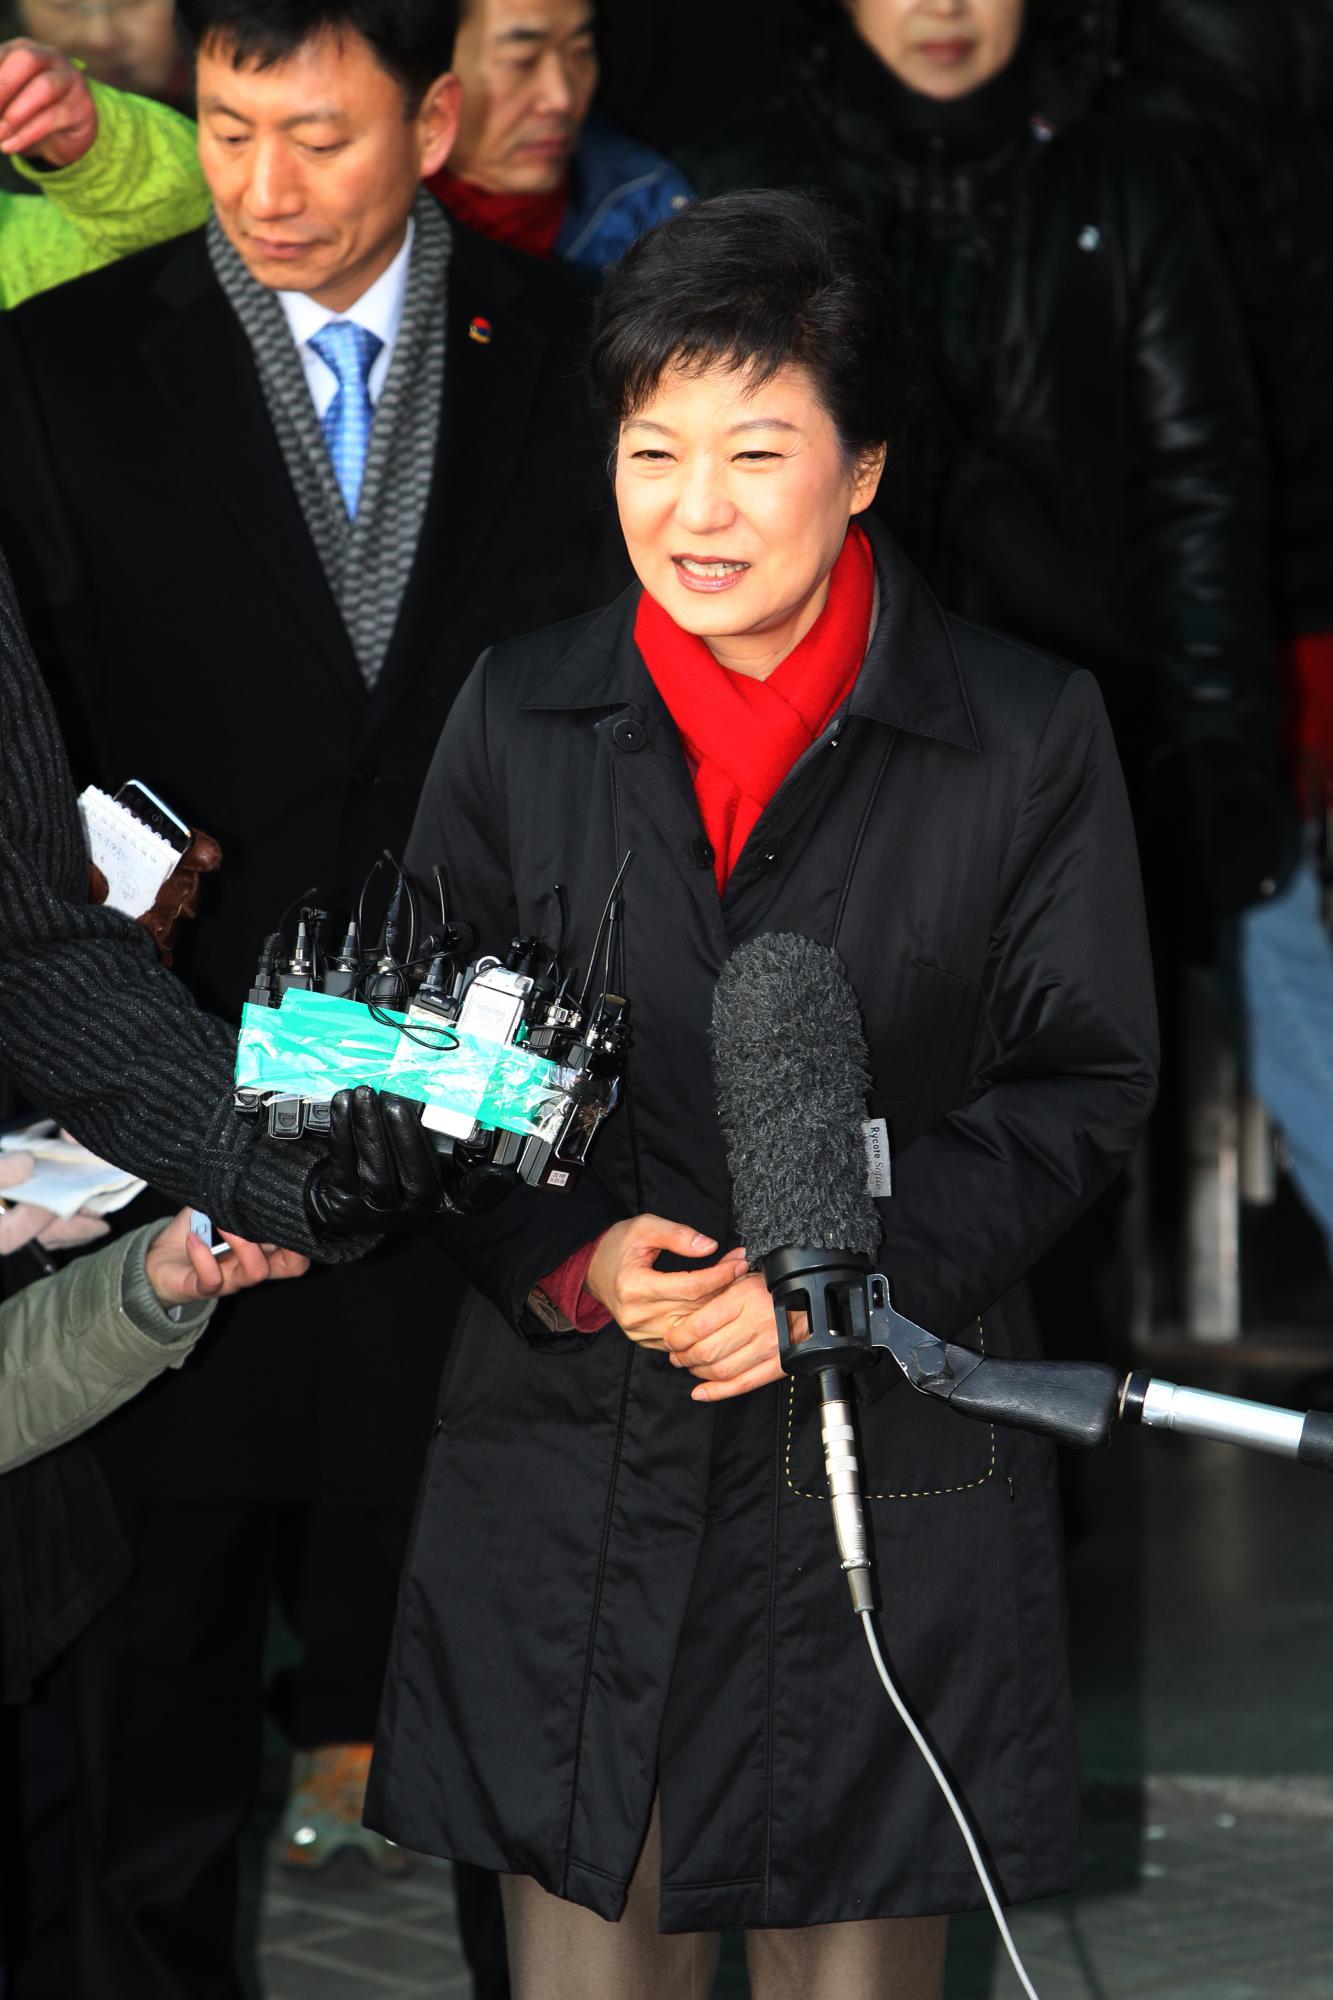 朴槿惠宣布计划出席东京中日韩峰会 - 2016年11月18日, 俄罗斯卫星通讯社